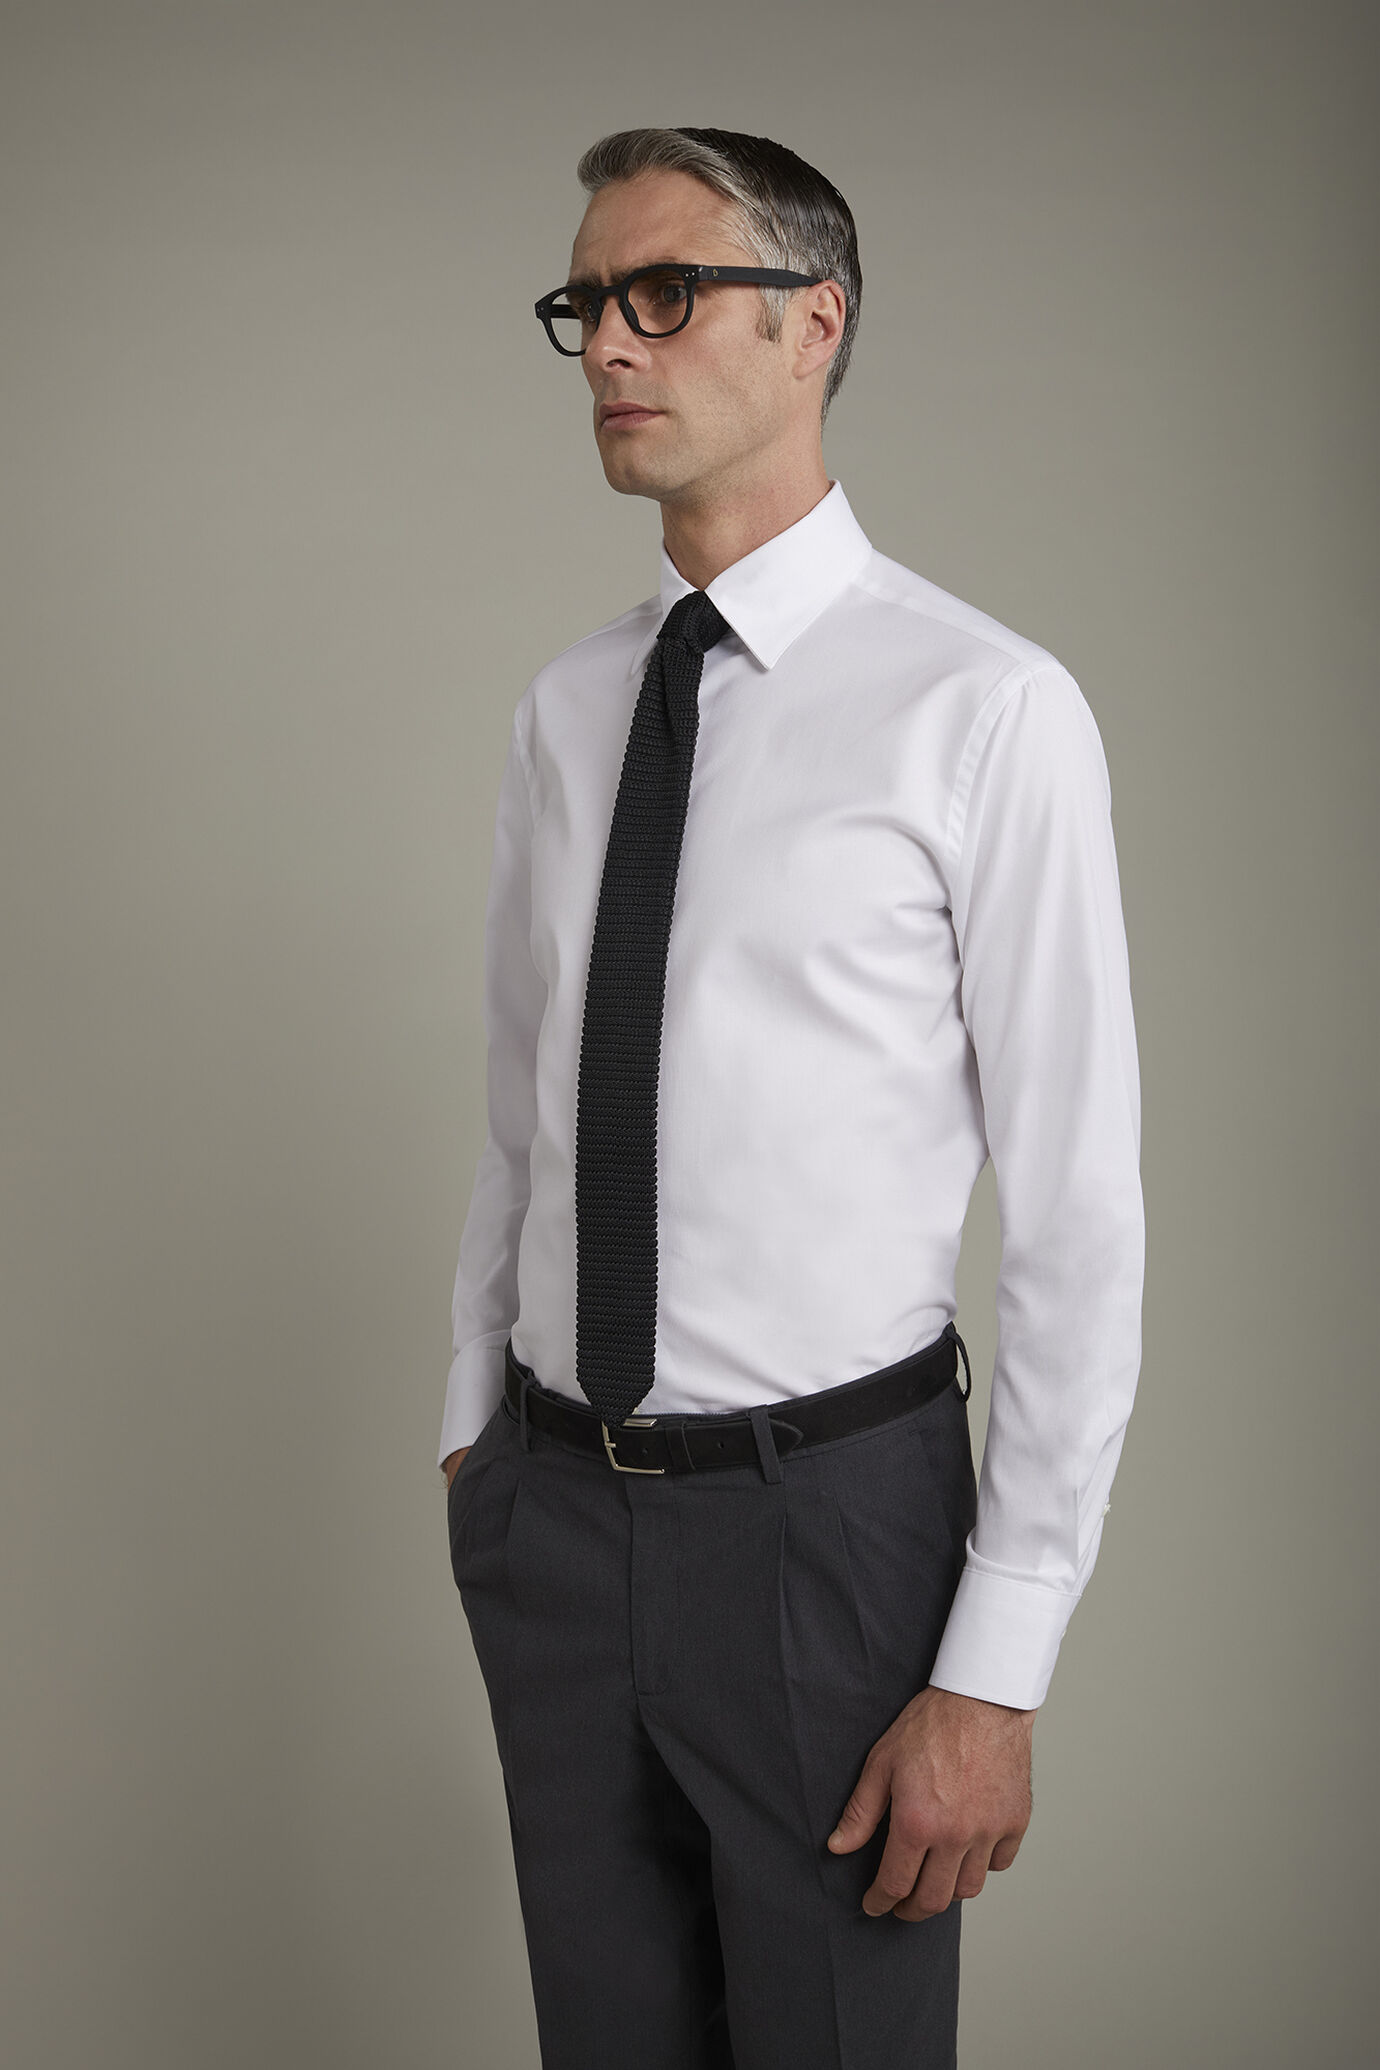 Men's shirt classic collar 100% cotton plain fabric regular fit image number 2